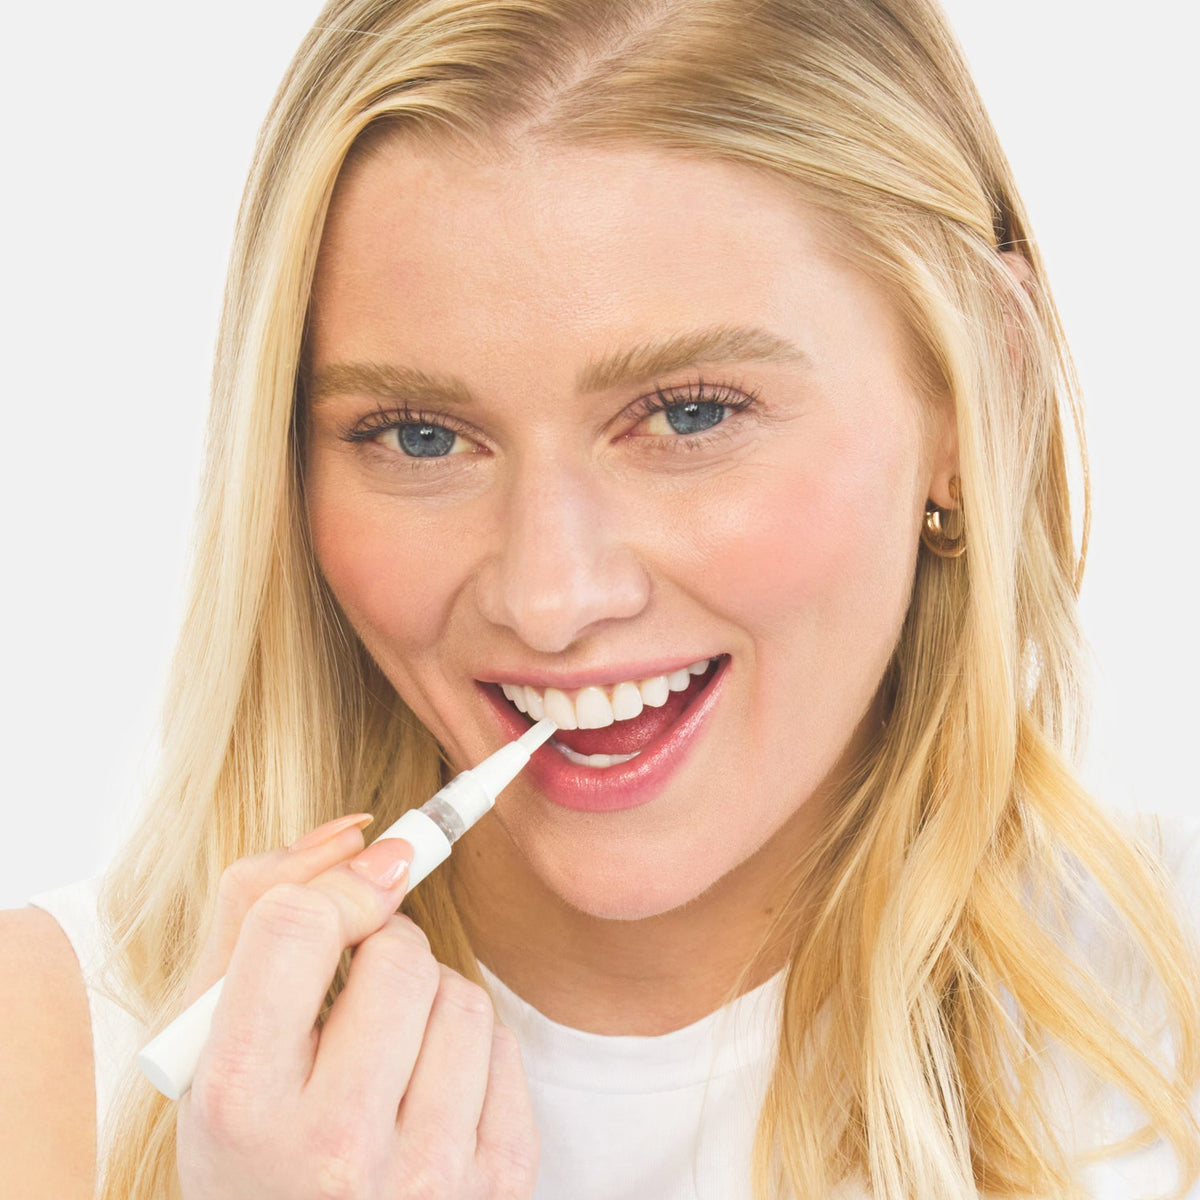 Premium Teeth Whitening Pen by Zimba Whitening